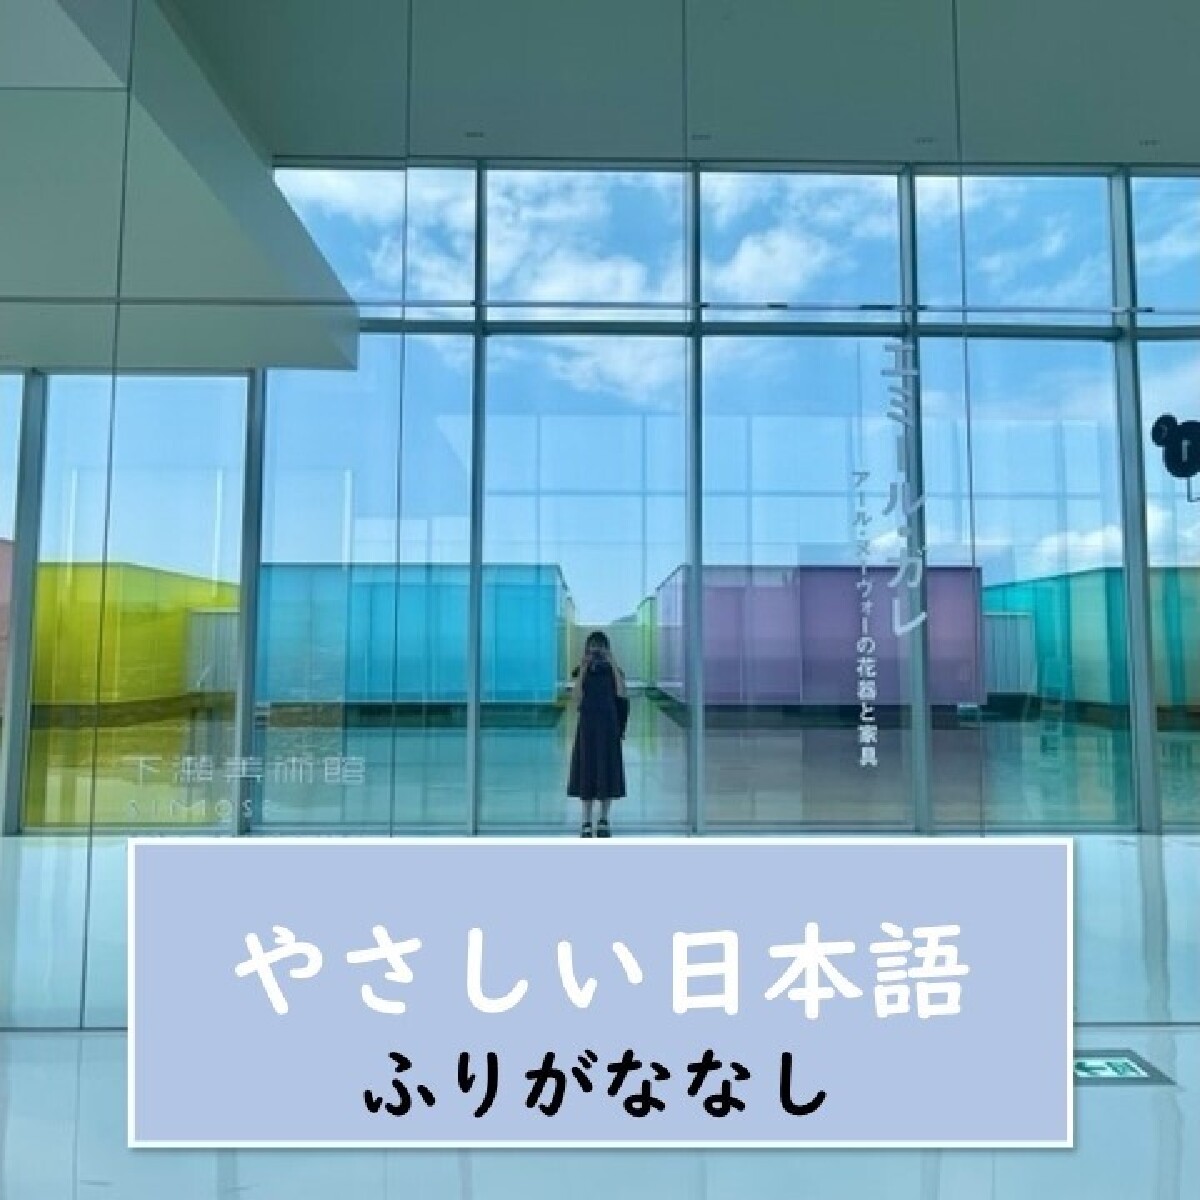 【広島(ひろしま)・美術館】”アートの中でアートを観ることができます。” そこは、新しくできた「下瀬美術館(しもせびじゅつかん)」です。【やさしい日本語・ふりがななし】